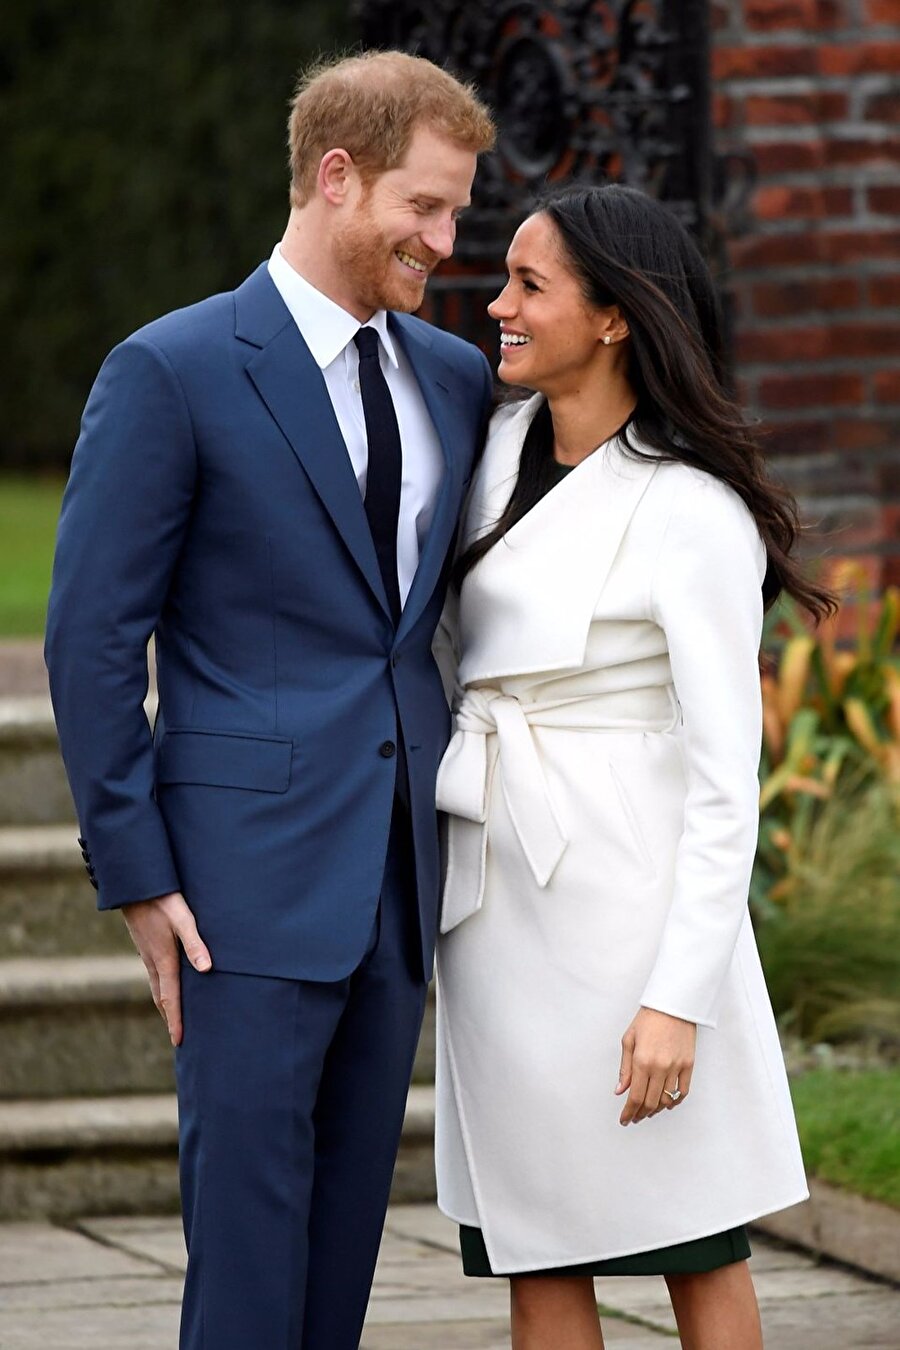 Evlilik teklifini böyle anlatmışlardı
İngiltere tahtının beşinci sıradaki varisi Prensi Harry (33) ve ABD’li oyuncu Meghan Markle (36), Prens Charles’ın çiftin nişanlandığını duyurmasının ardından Kensignton Sarayı’nda birlikte ilk röportajlarını verdi. Nişan yüzüğüyle ilk kez görülen Markle ile mavi bir takım elbise giyen Prens Harry, röportaj süresince el ele tutuşarak ilişkileri hakkındaki detayları anlattı. Çift, evlilik teklifinin Kensington Sarayı’ndaki Nottingham Cottage’da akşam yemeği için tavuk pişirirken gerçekleştiğini söyledi. ABD’li oyuncu Meghan Markle, Prens Harry'nin "çok tatlı, doğal ve romantik" bir şekilde evlilik teklifi yaptığını belirtti. Markle, Prens Harry’nin evlilik teklifi için diz çökmesinin ardından ve prens daha cümlesini bitirmeden aniden “Evet” dediğini aktardı. Prens Harry; “Meghan’a inanılamayacak kadar hızlı bir şekilde aşık oldum. Sanki bir anda gökyüzündeki bütün yıldızlar belirdi. Her şey mükemmeldi. Bu güzel kadın, kelimenin tam anlamıyla hayatıma girdi, ben de onun hayatına girdim” diyerek, Meghan Markle ile ileride bir aile kurmak istediğini belirtti. “Çocuk düşünüyor musunuz?” sorusuna ise “Her şey sırayla” yanıtını verdi. Prens Harry, kraliyet ailesine katılmanın "hiç kimse için kolay olmadığını" ancak o ve nişanlısının gelecekte bir takım olacağını vurguladı.